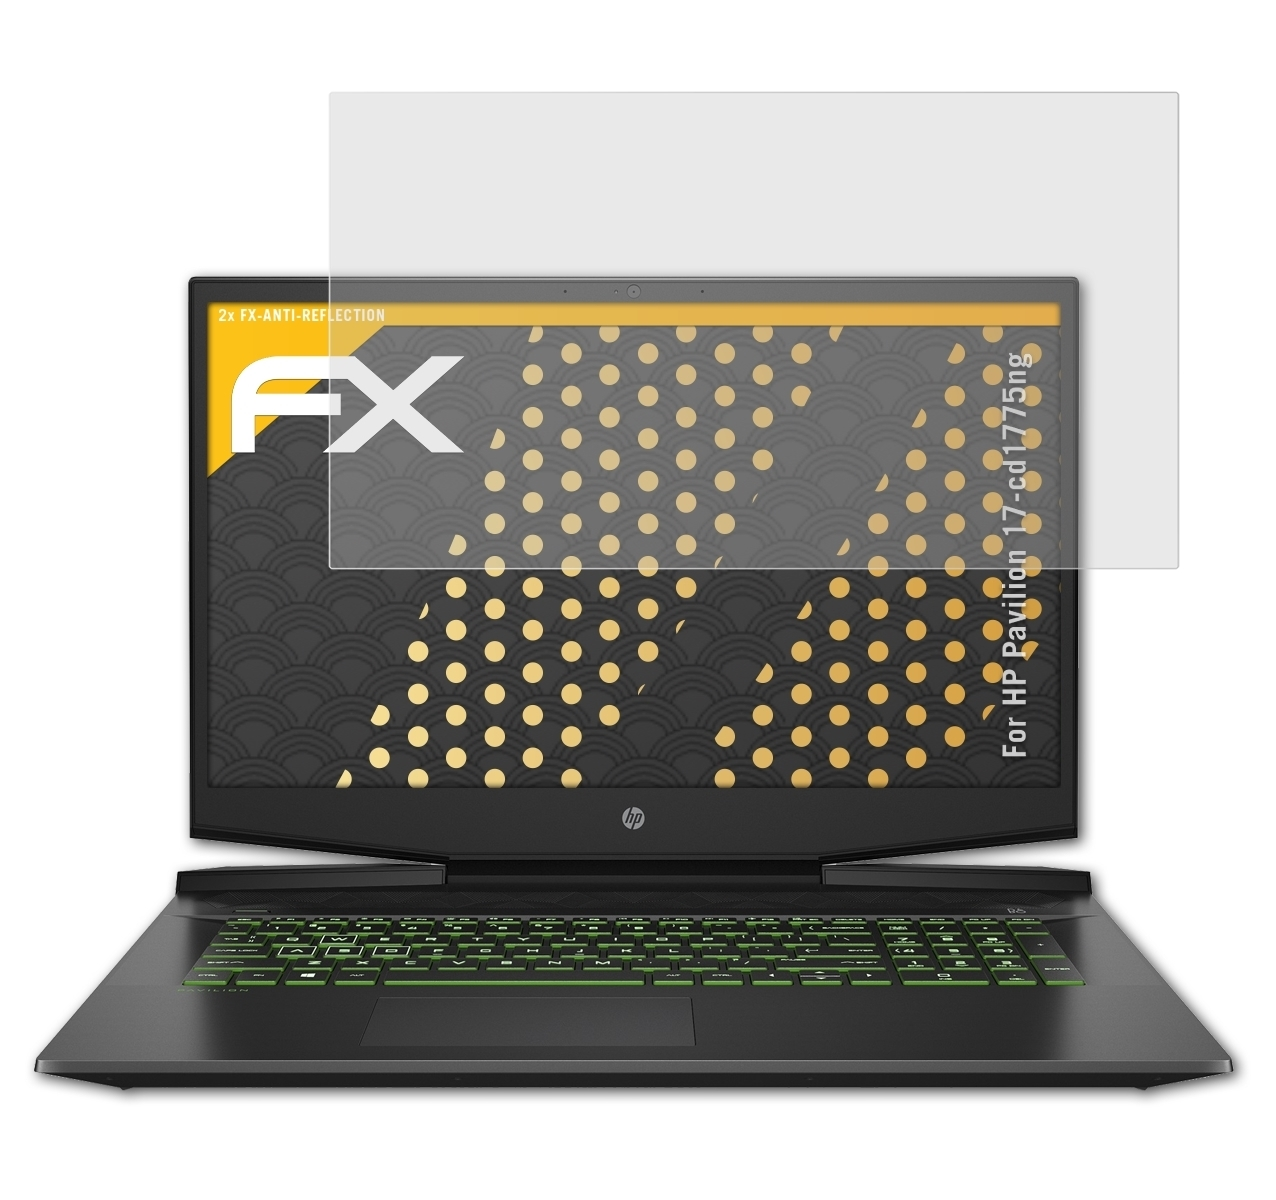 HP FX-Antireflex ATFOLIX Pavilion Displayschutz(für 2x 17-cd1775ng)